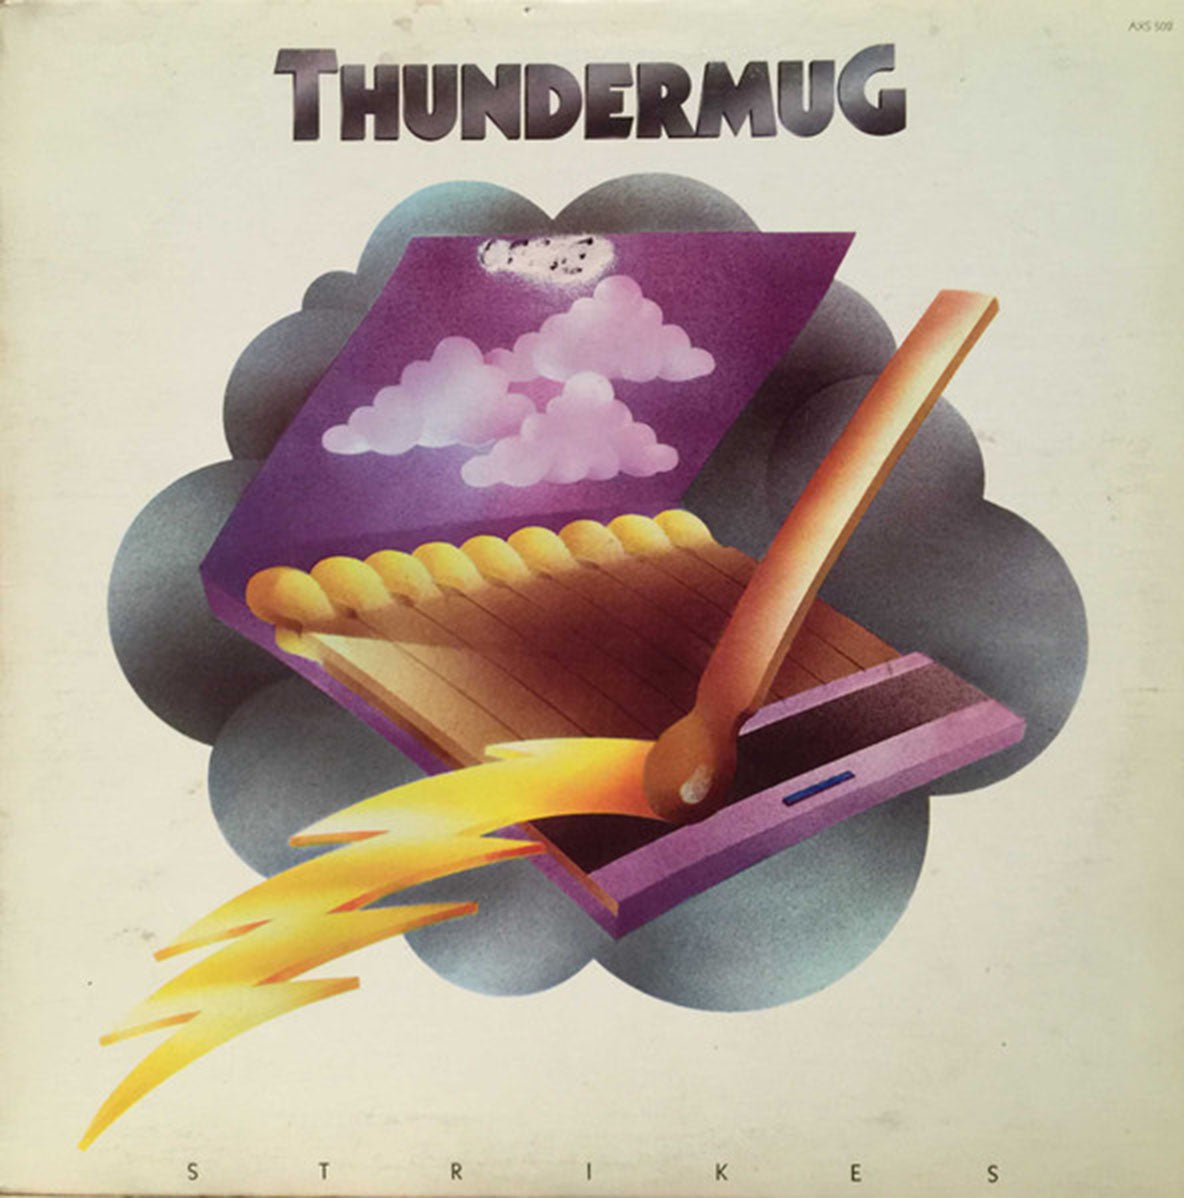 Thundermug – Thundermug Strikes - Rare